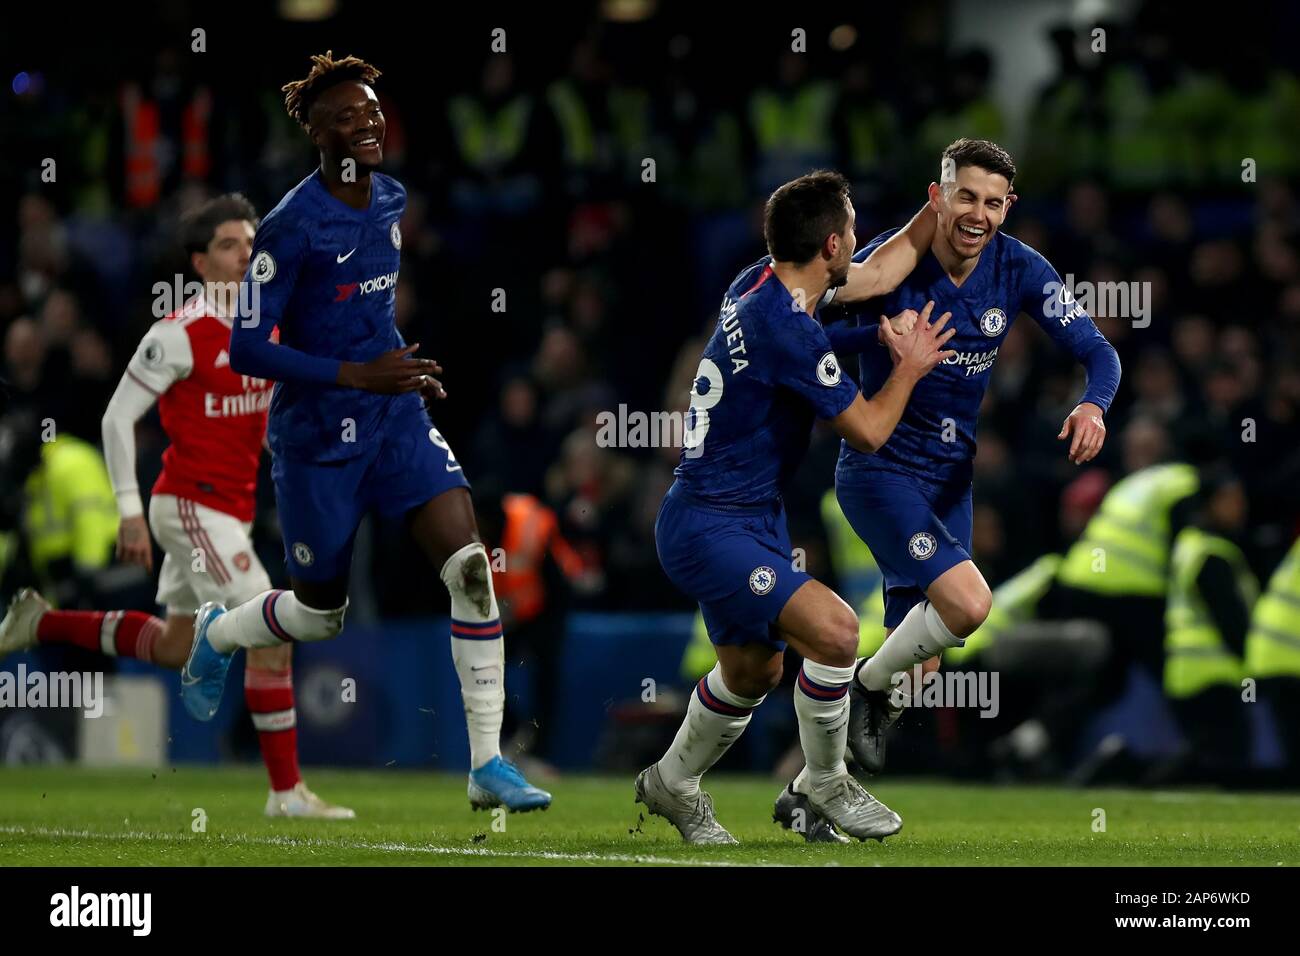 Stamford Bridge, Londres, Reino Unido. 21 ene, 2020. La Liga inglesa de fútbol, Chelsea vs Arsenal; Jorginho de Chelsea como él anota desde el punto penal el 1-0 en el